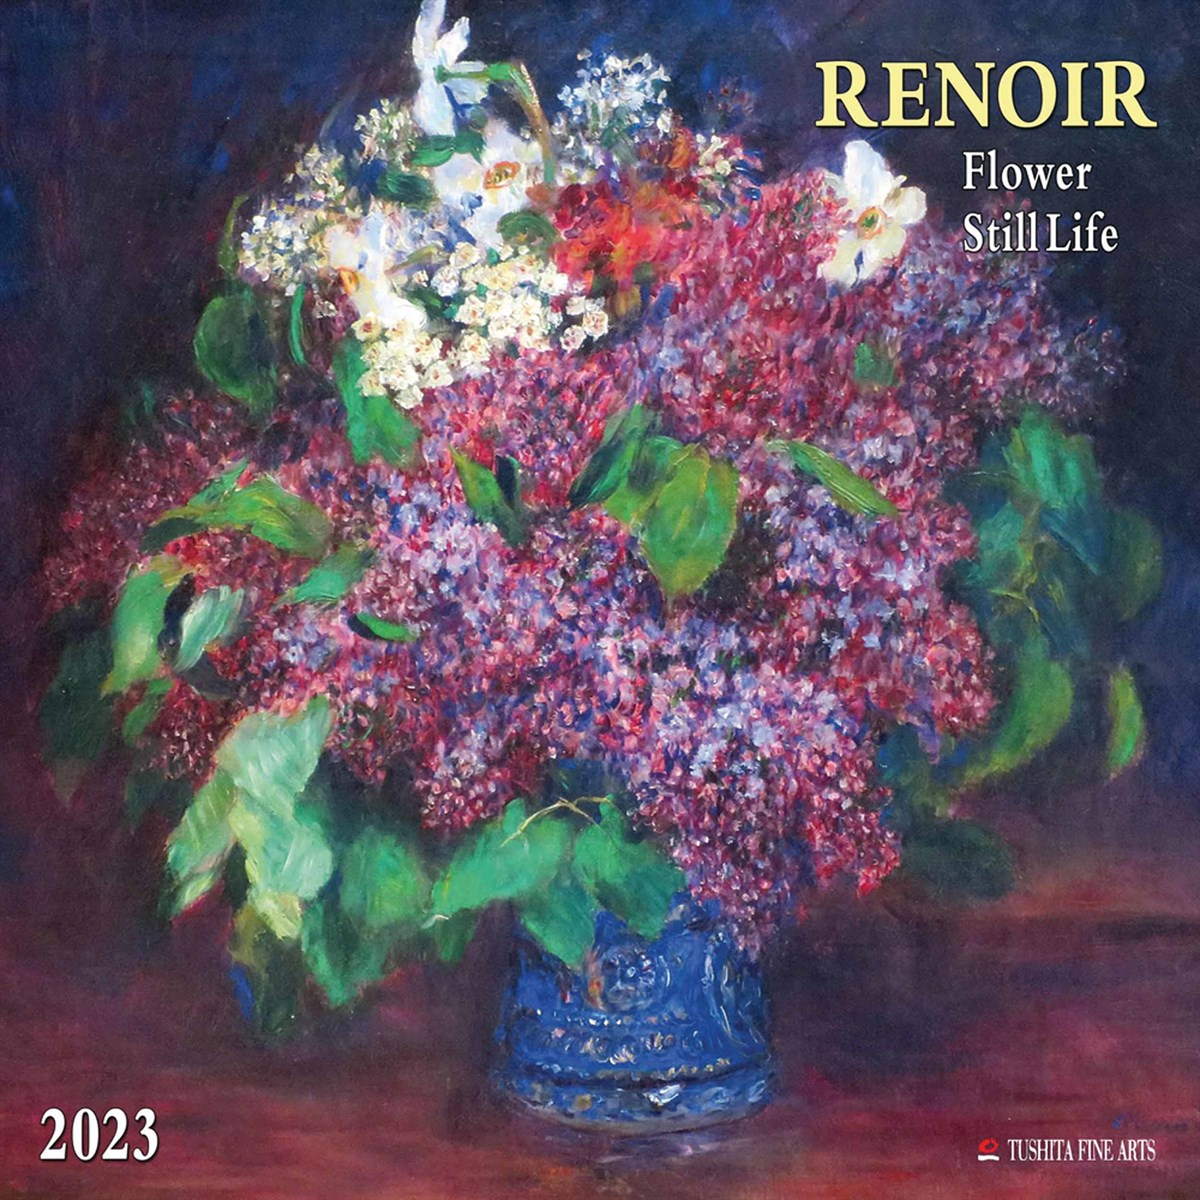 Renoir, Flower Still Life 2023 Calendars